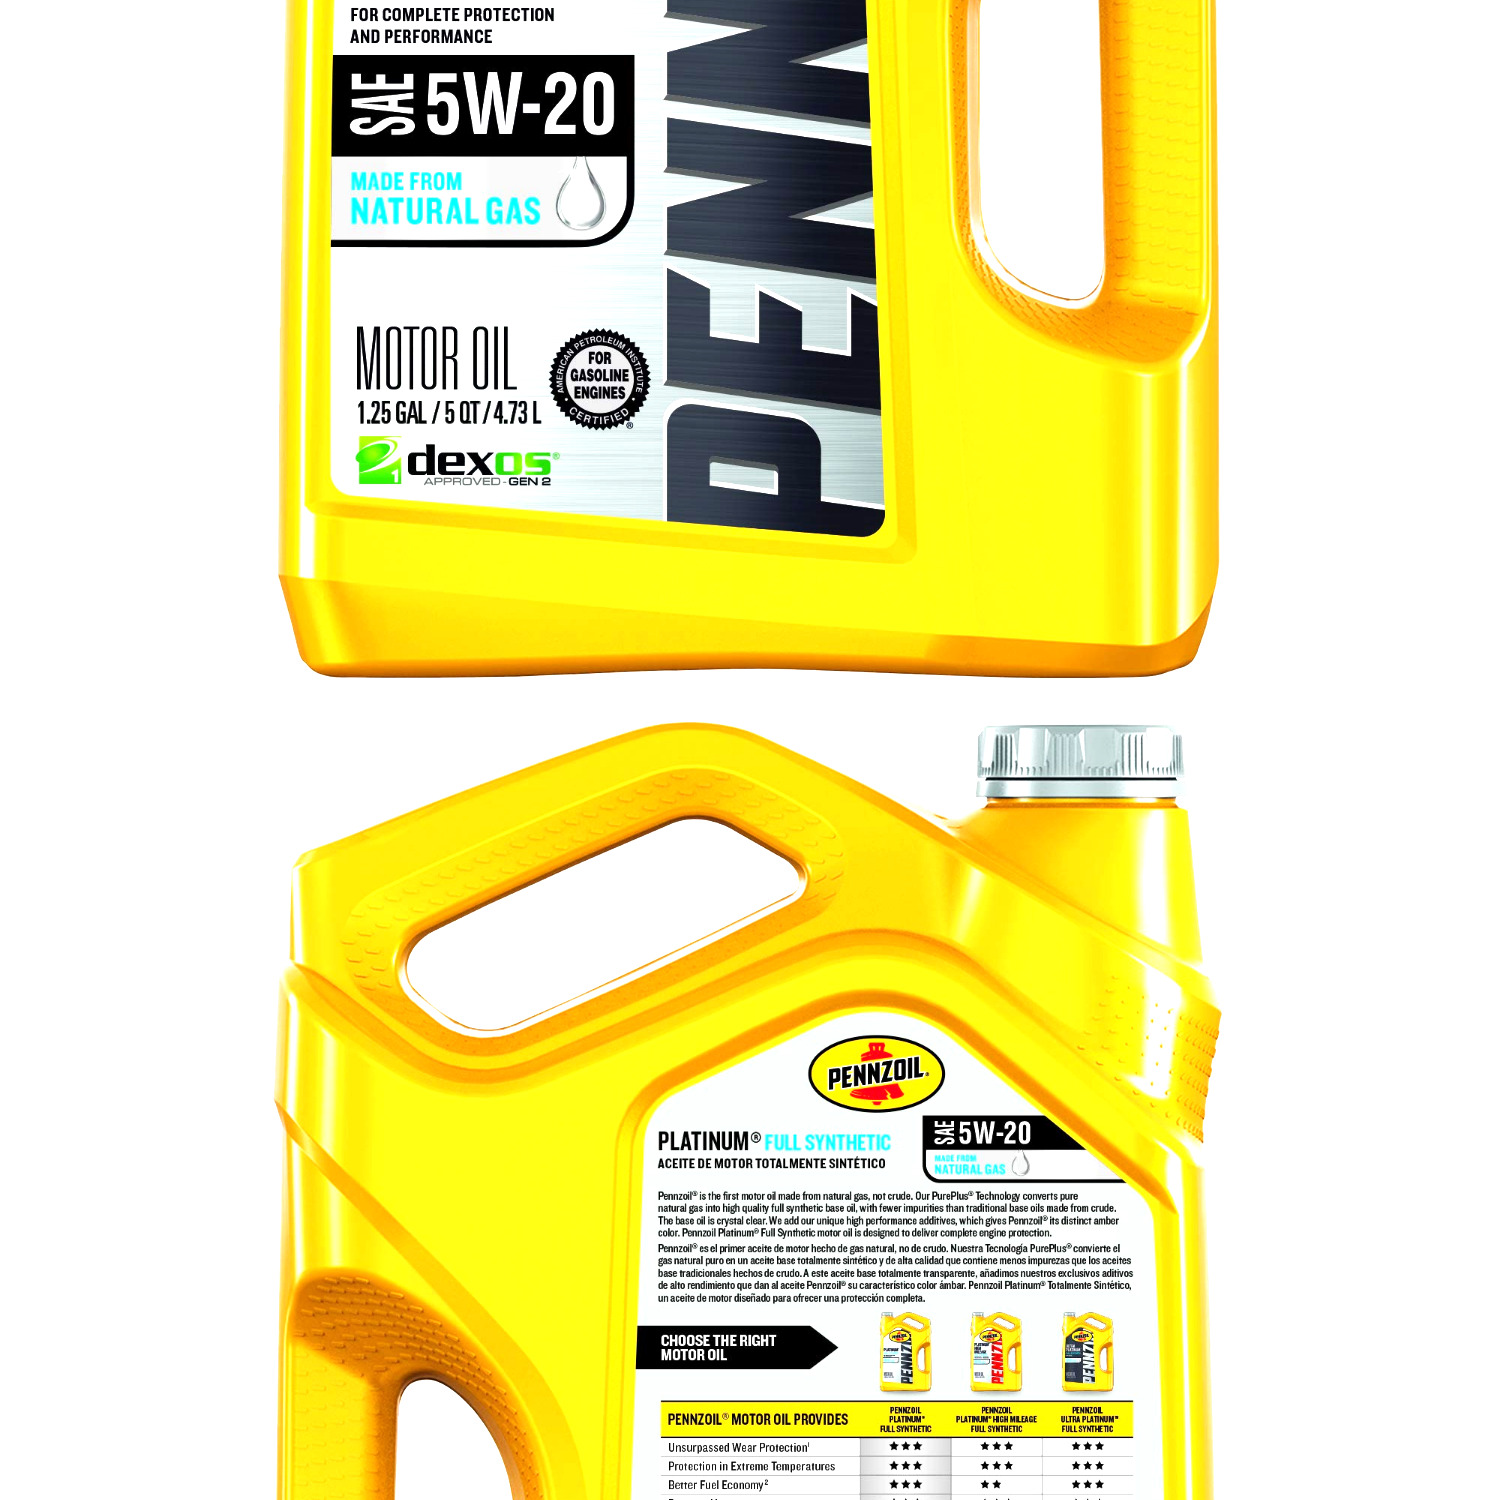 Pennzoil Platinum Full Synthetic Motor Oil (SN) 5W-20, 5 Quart - Pack of 1